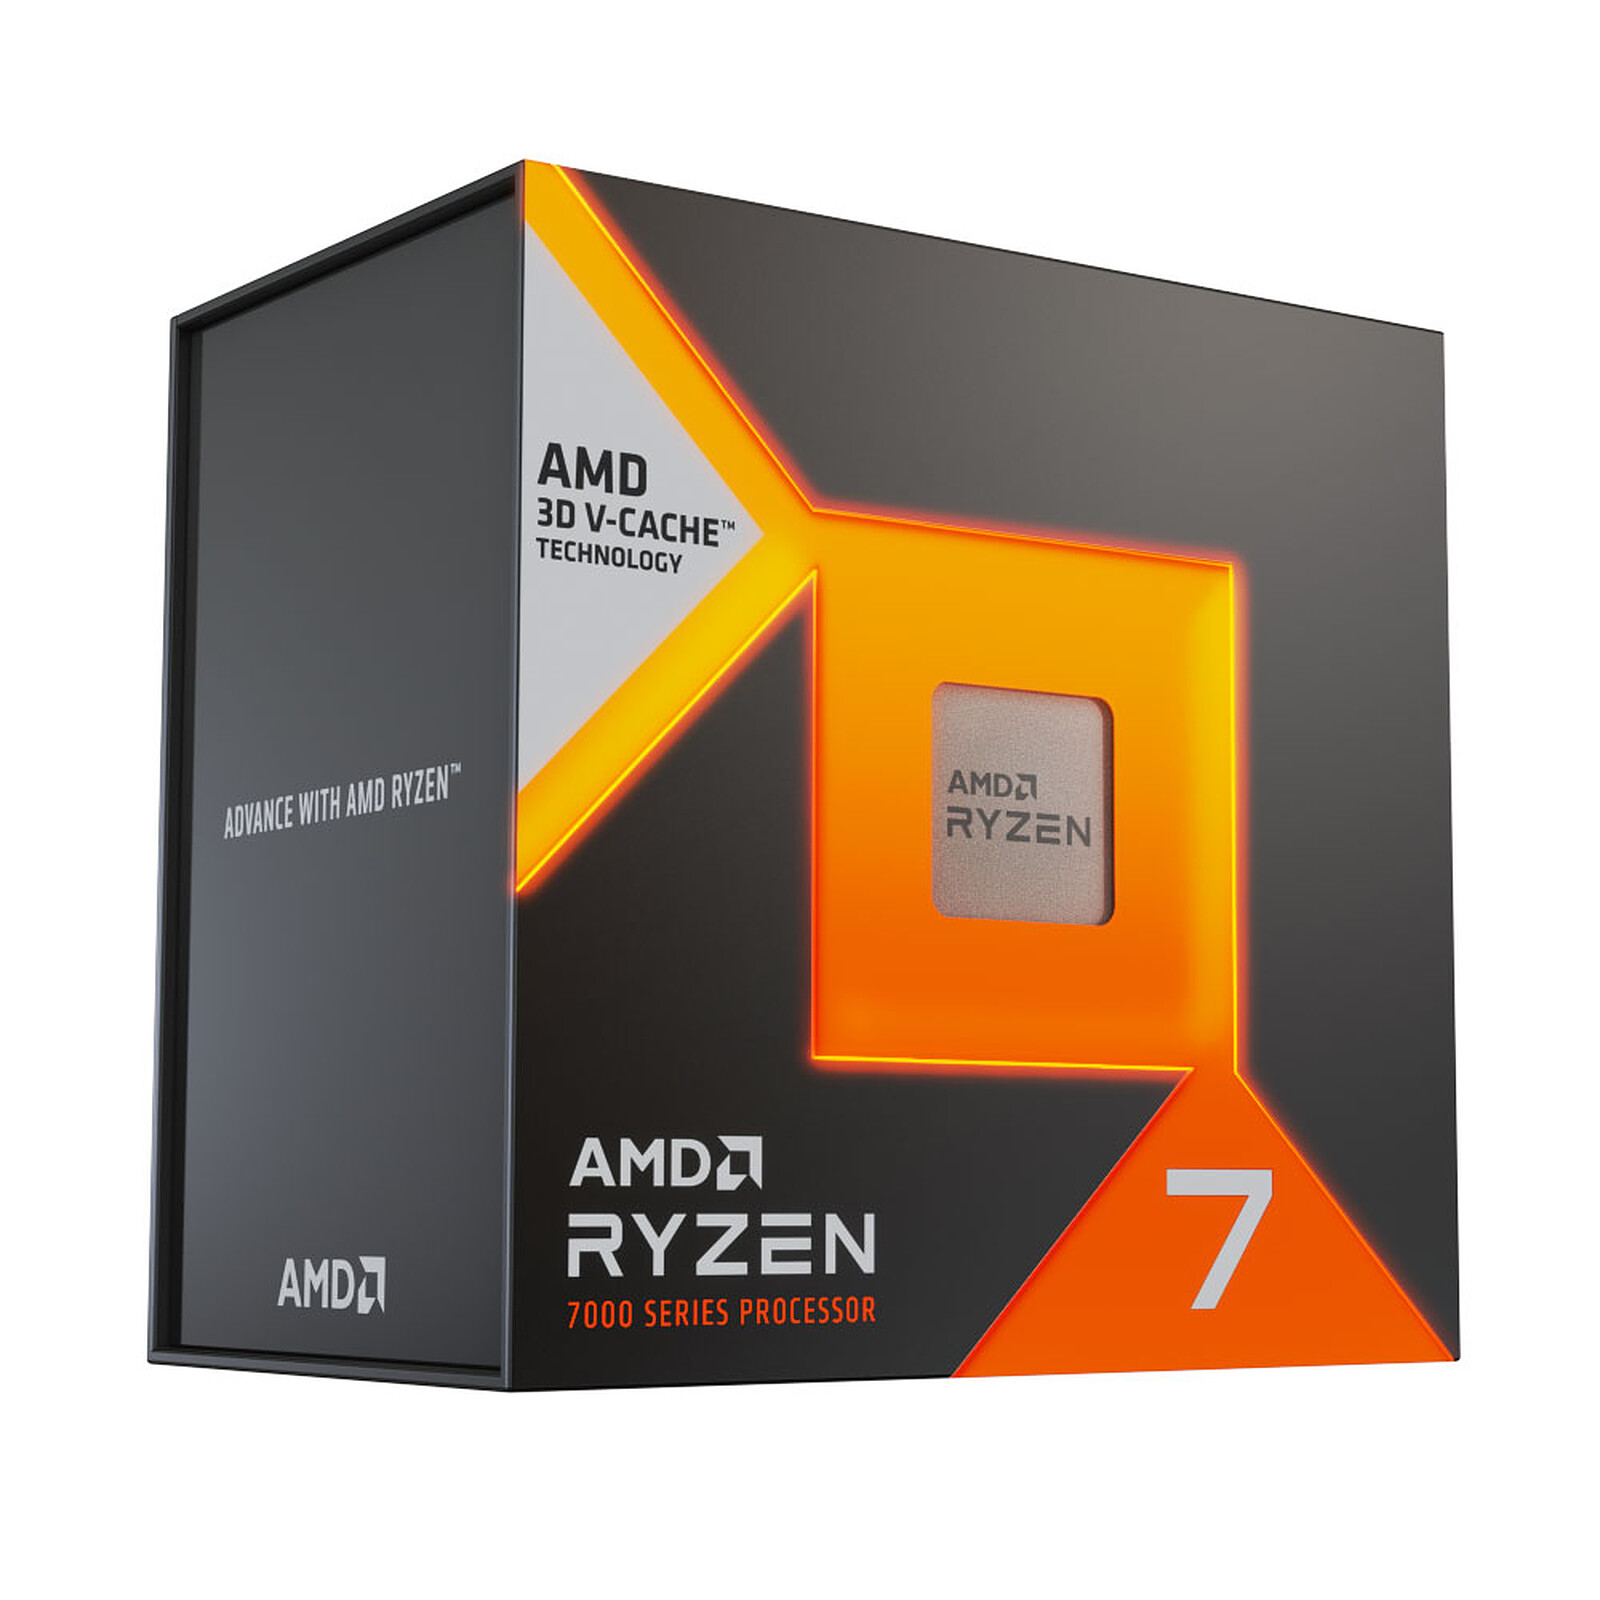 AMD Ryzen 5 3600 Wraith Spire : un excellent rapport performance prix